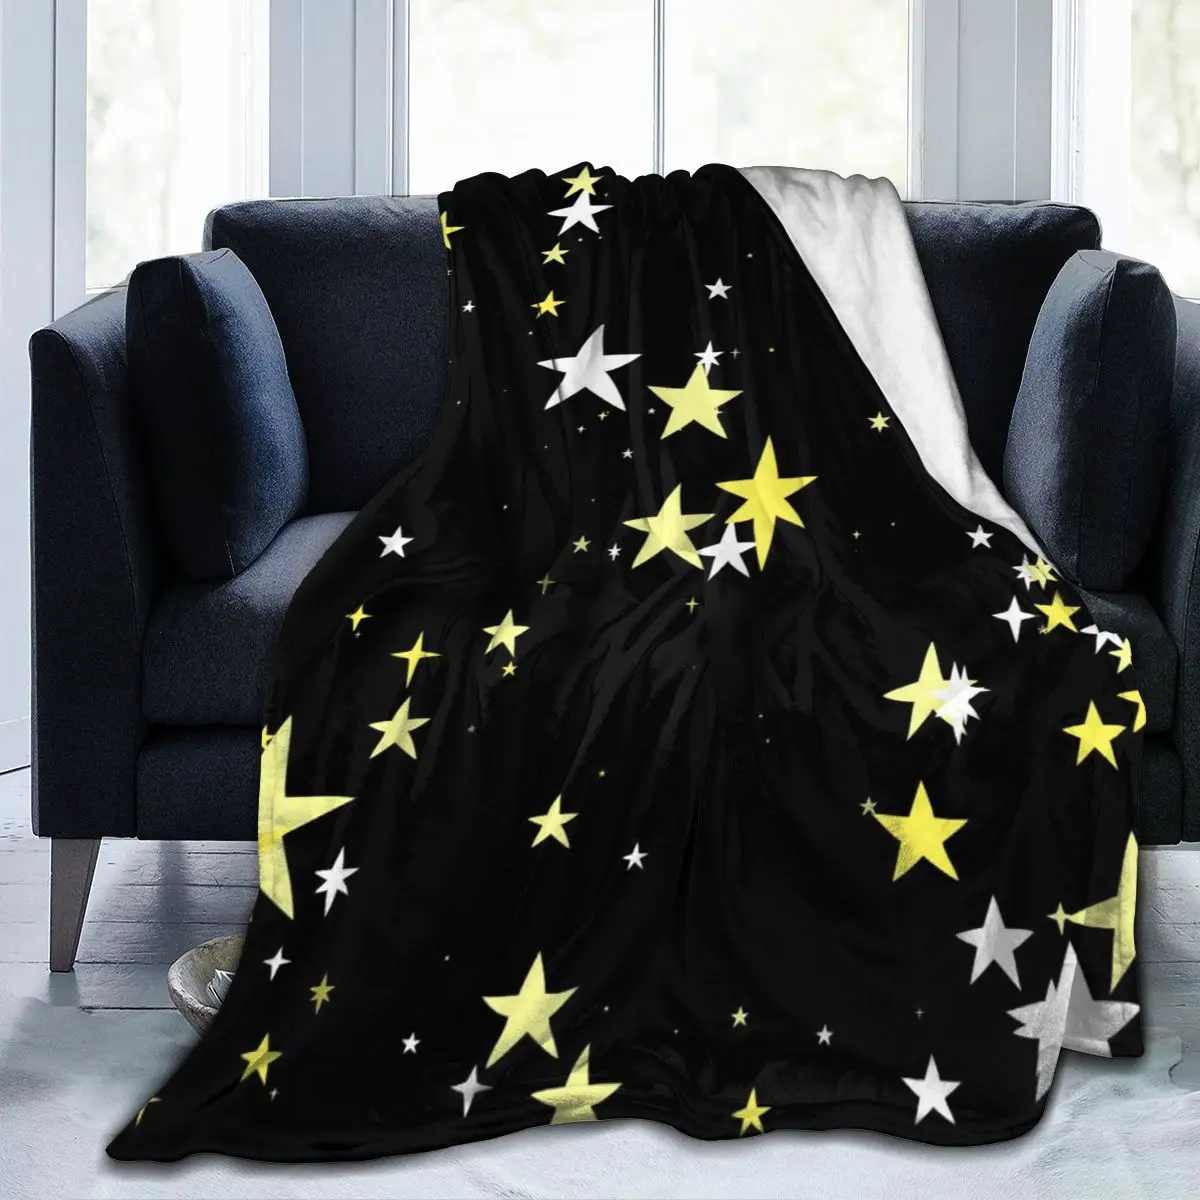 

Manta de franela с принтом estrellas en 3D, ropa de cama suave, cubierta de cama, decorar textil para el доме